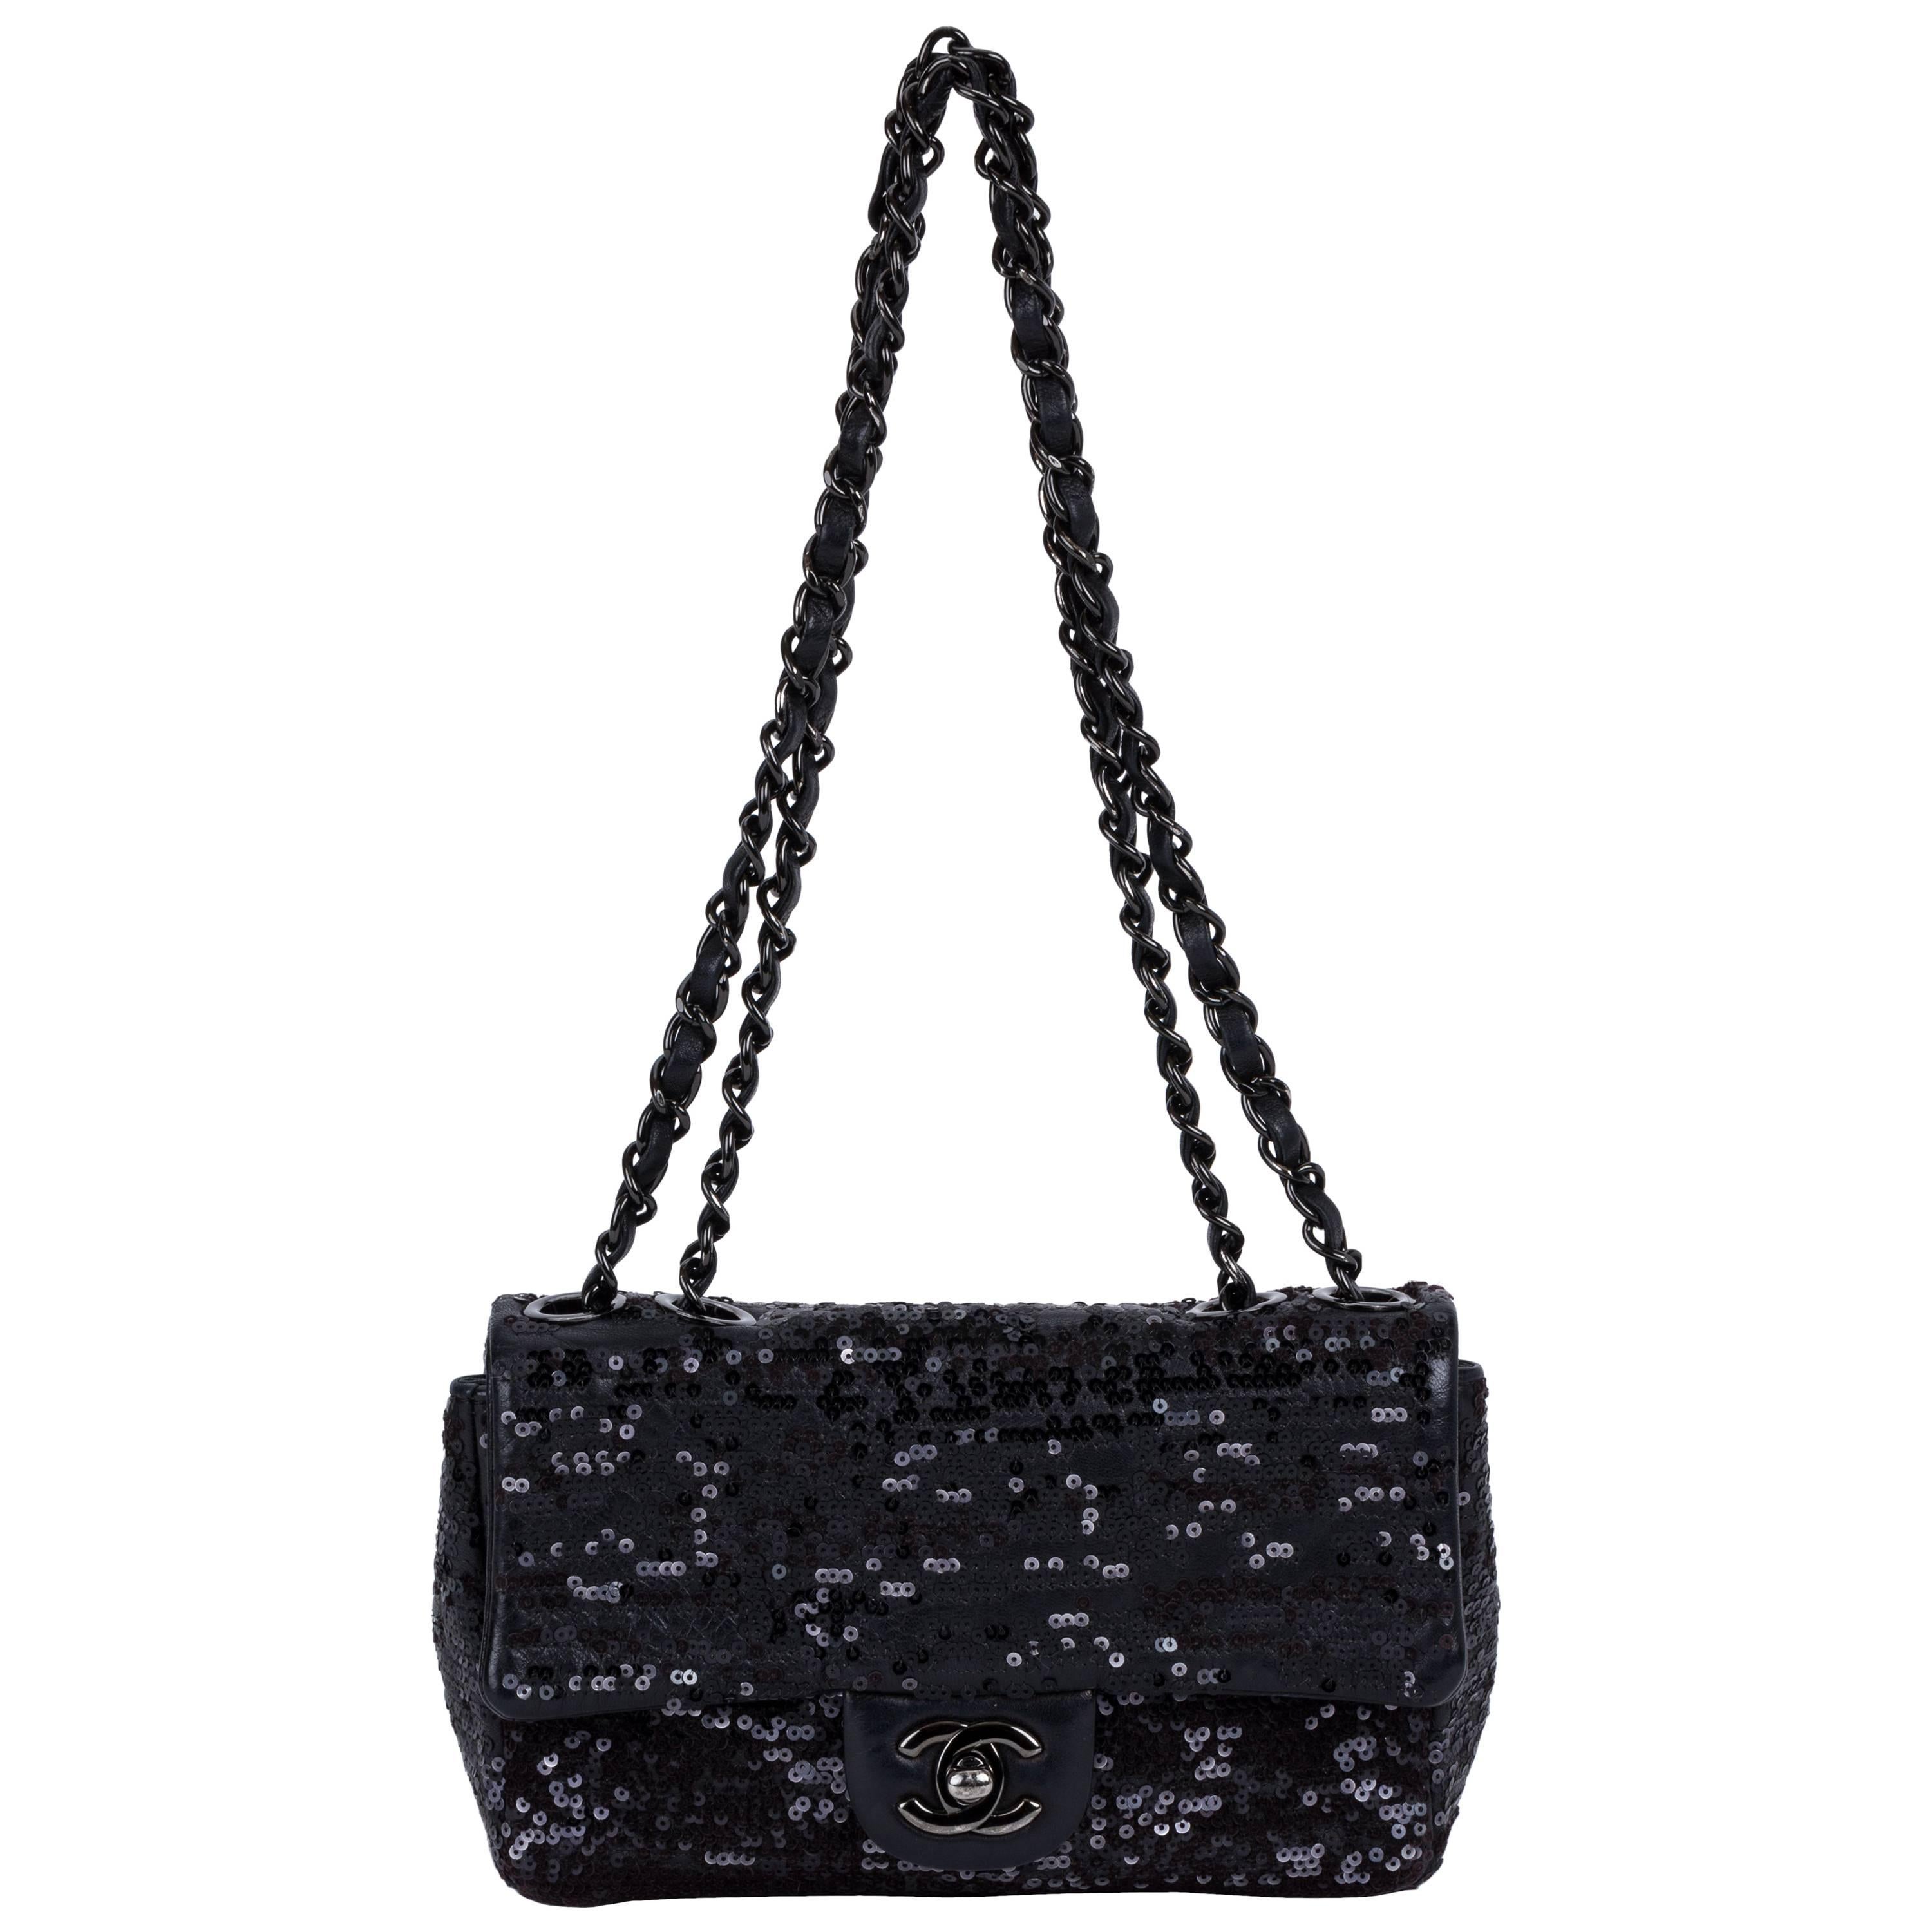 Chanel Black Leather Sequins Handbag